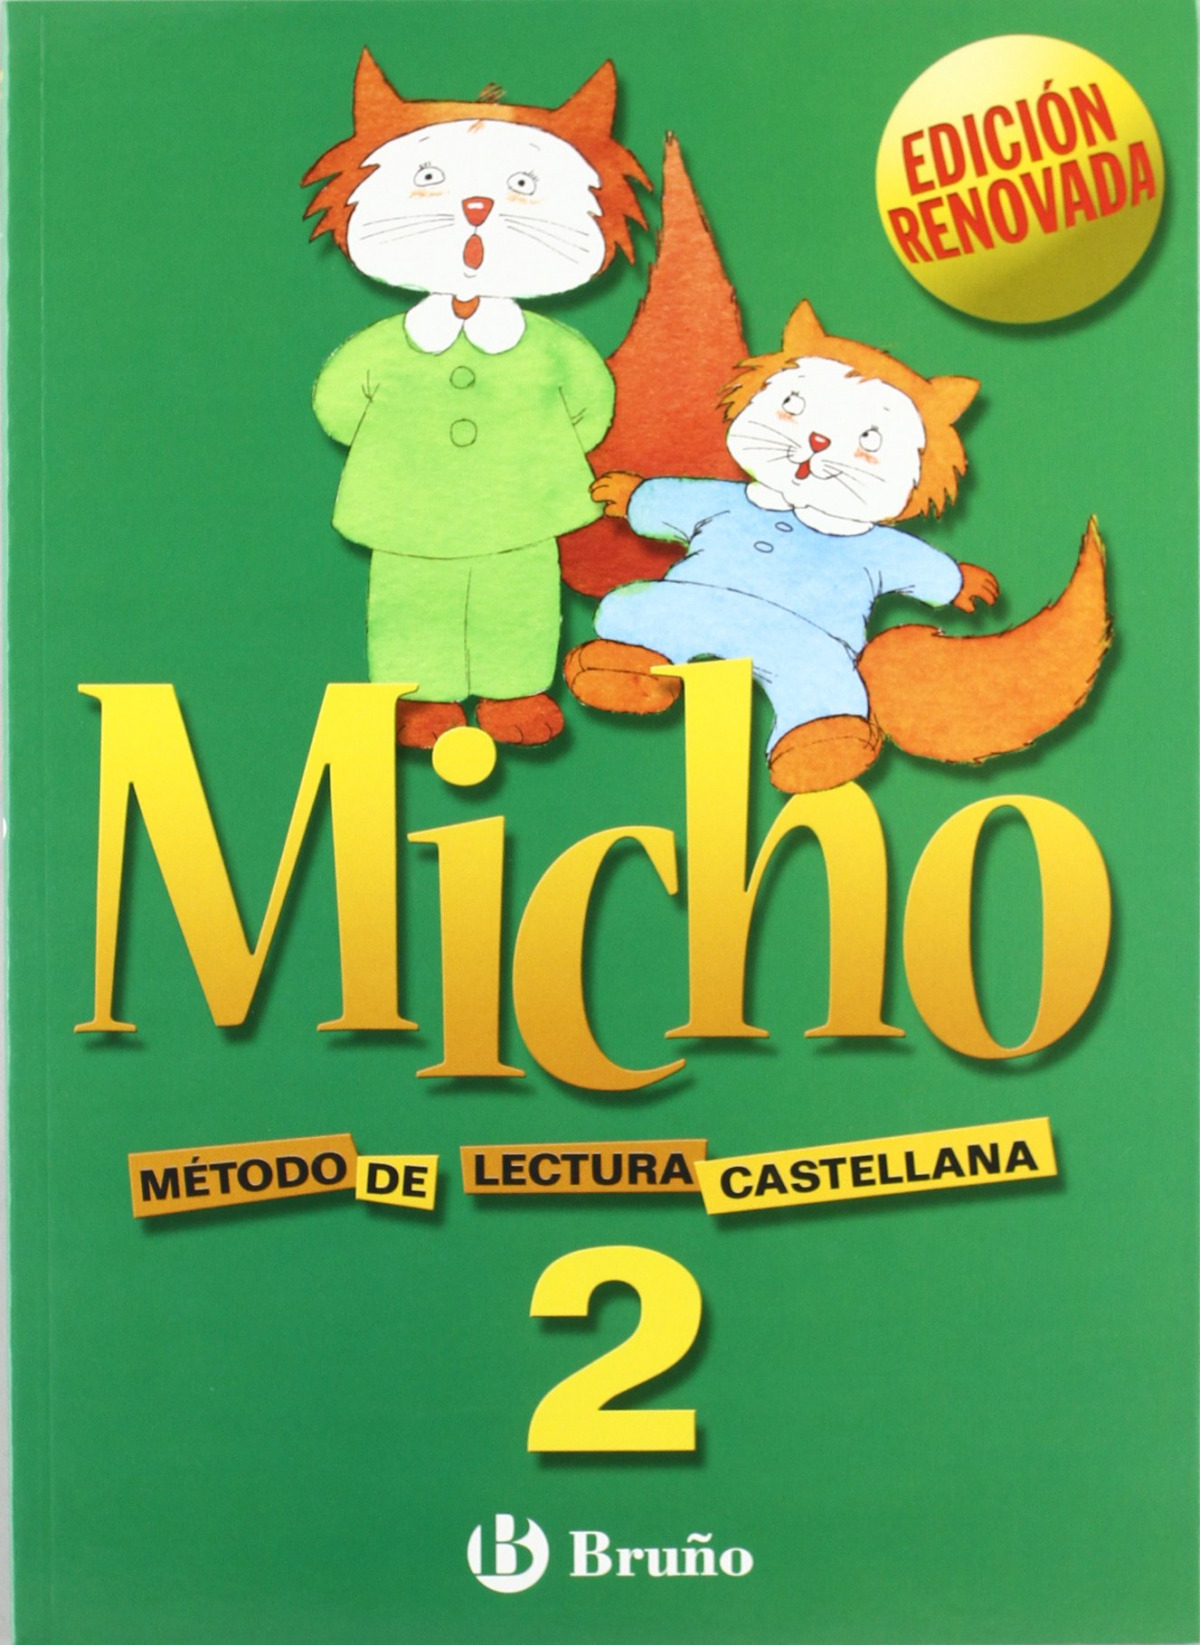 MICHO 2. Método de lectura castellana (Ed. Bruño) de Martínez